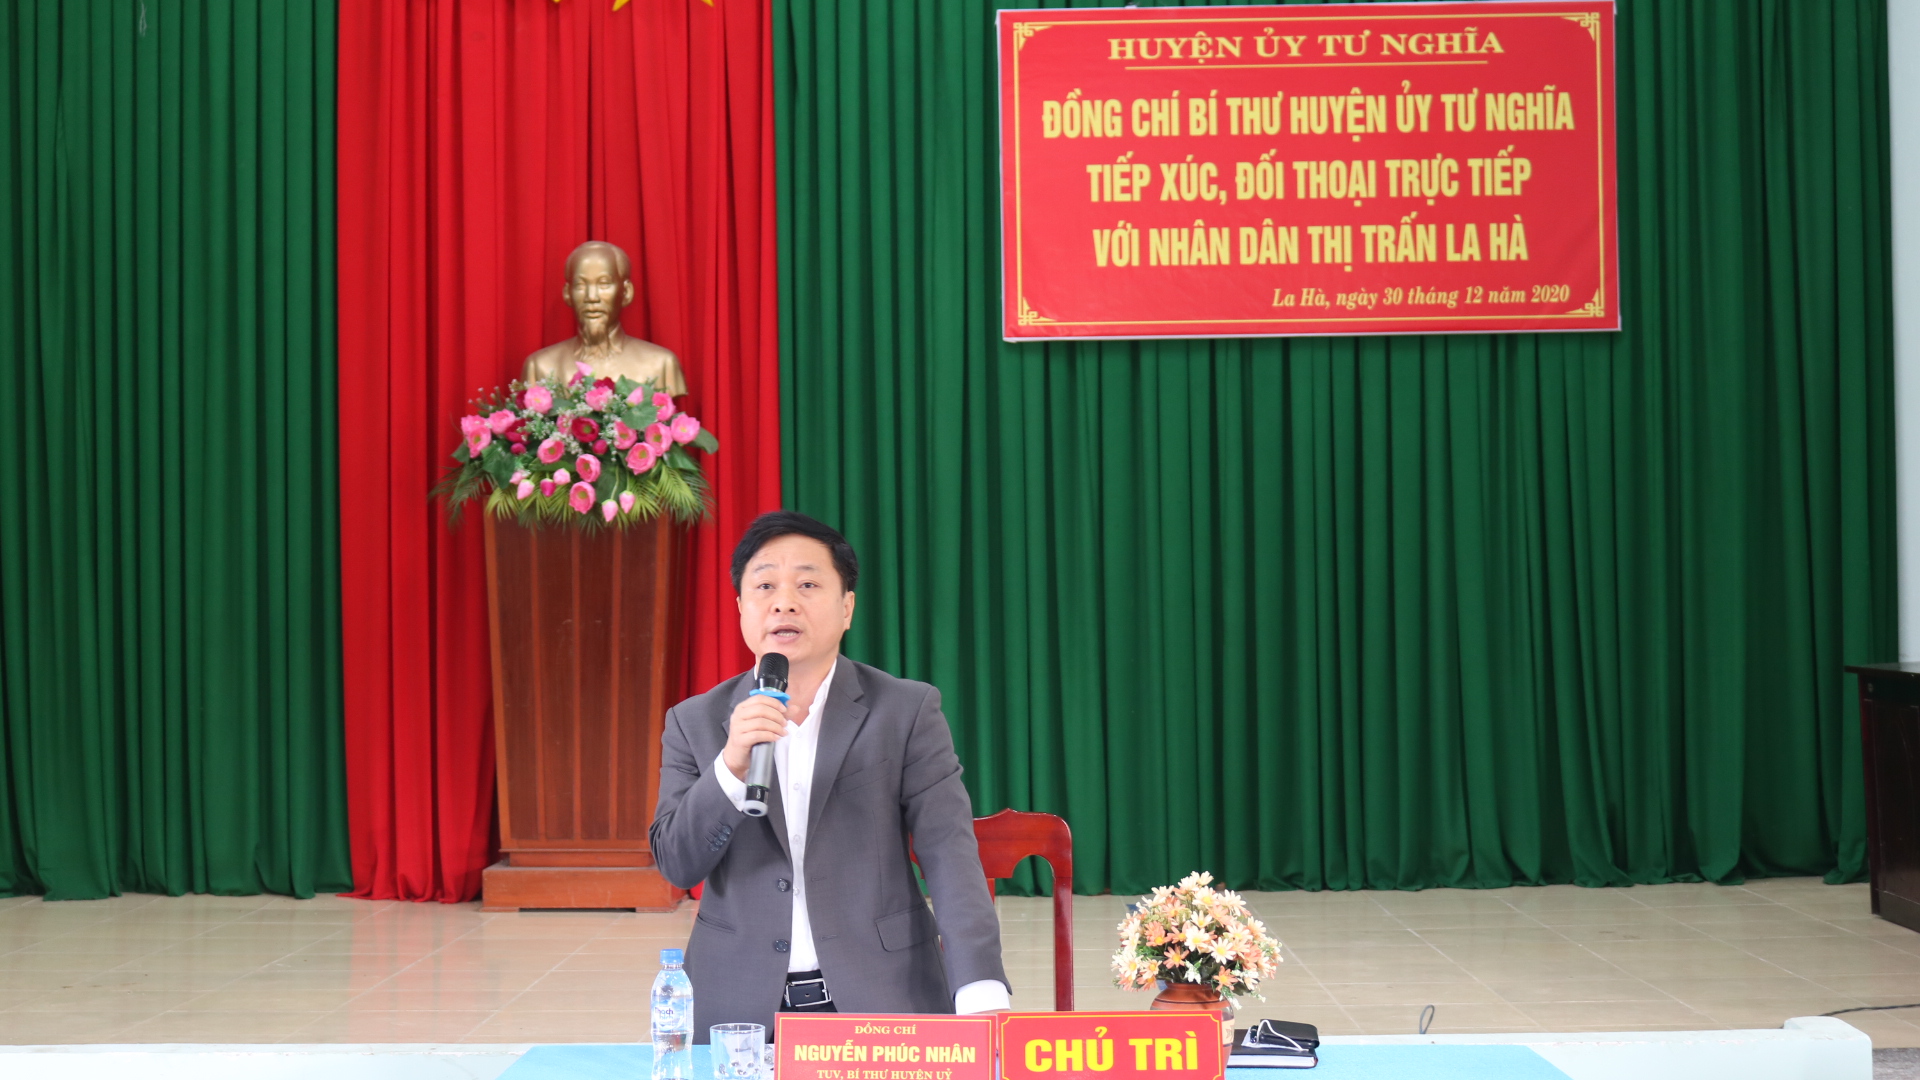 Bí thư Huyện ủy Tư Nghĩa Nguyễn Phúc Nhân gặp gỡ, đối thoại trực tiếp với Nhân dân thị trấn La Hà